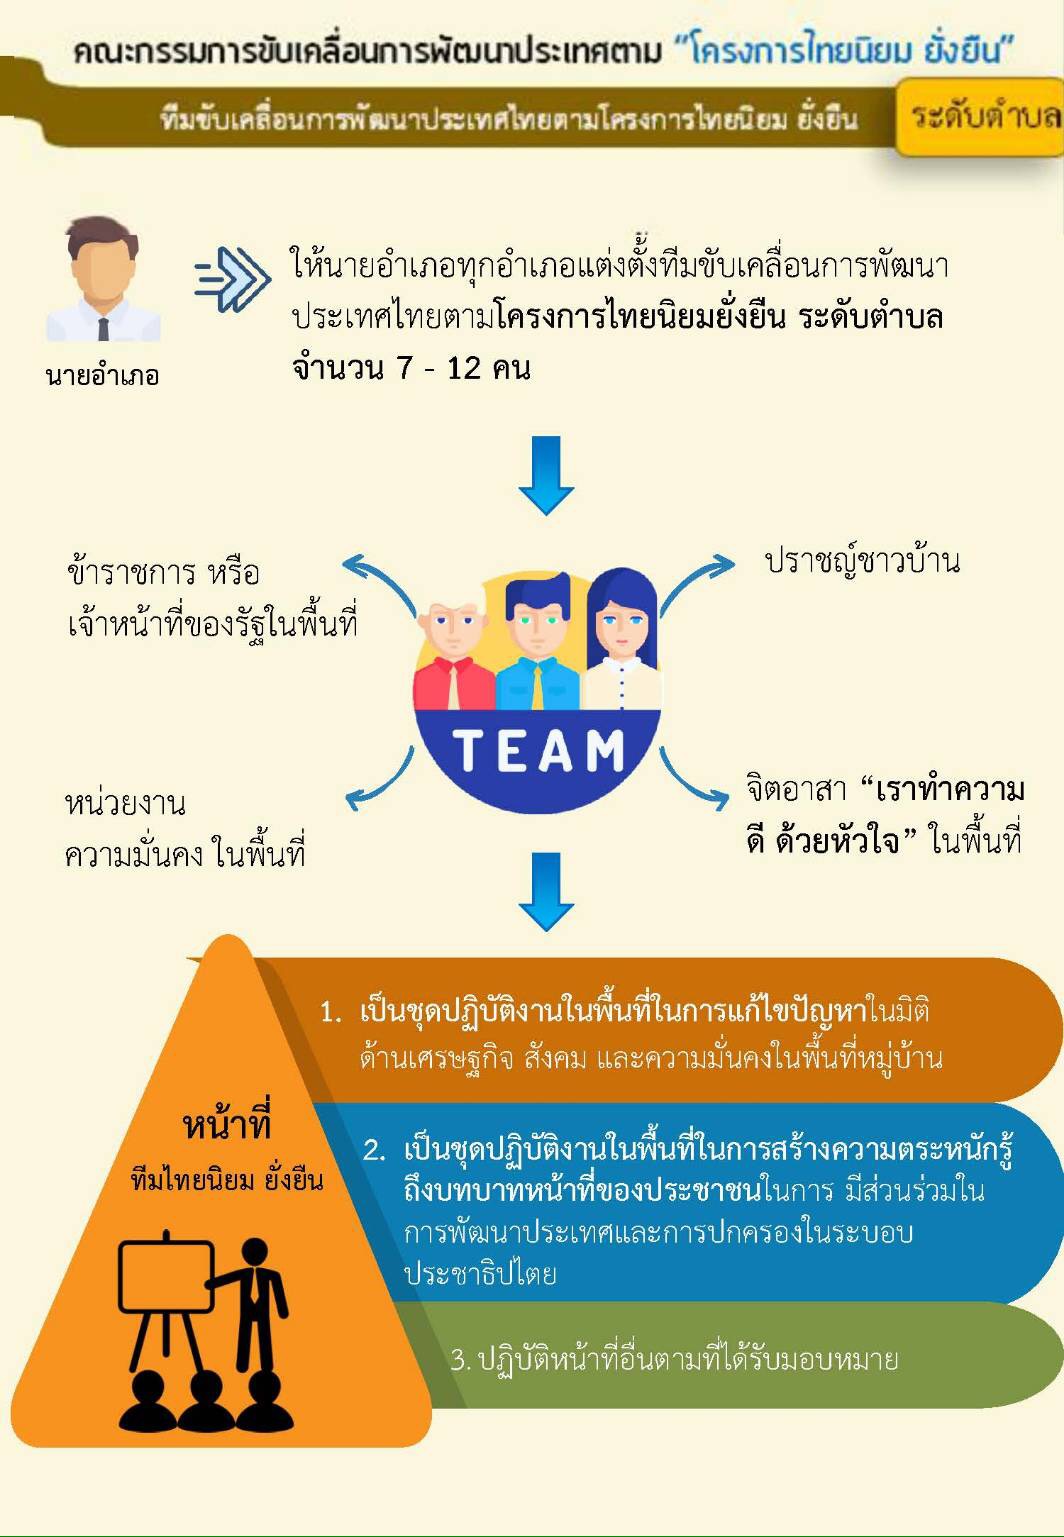 ทีมขับเคลื่อนการพัฒนาประเทศไทยตามโครงการไทยนิยม ยั่งยืน